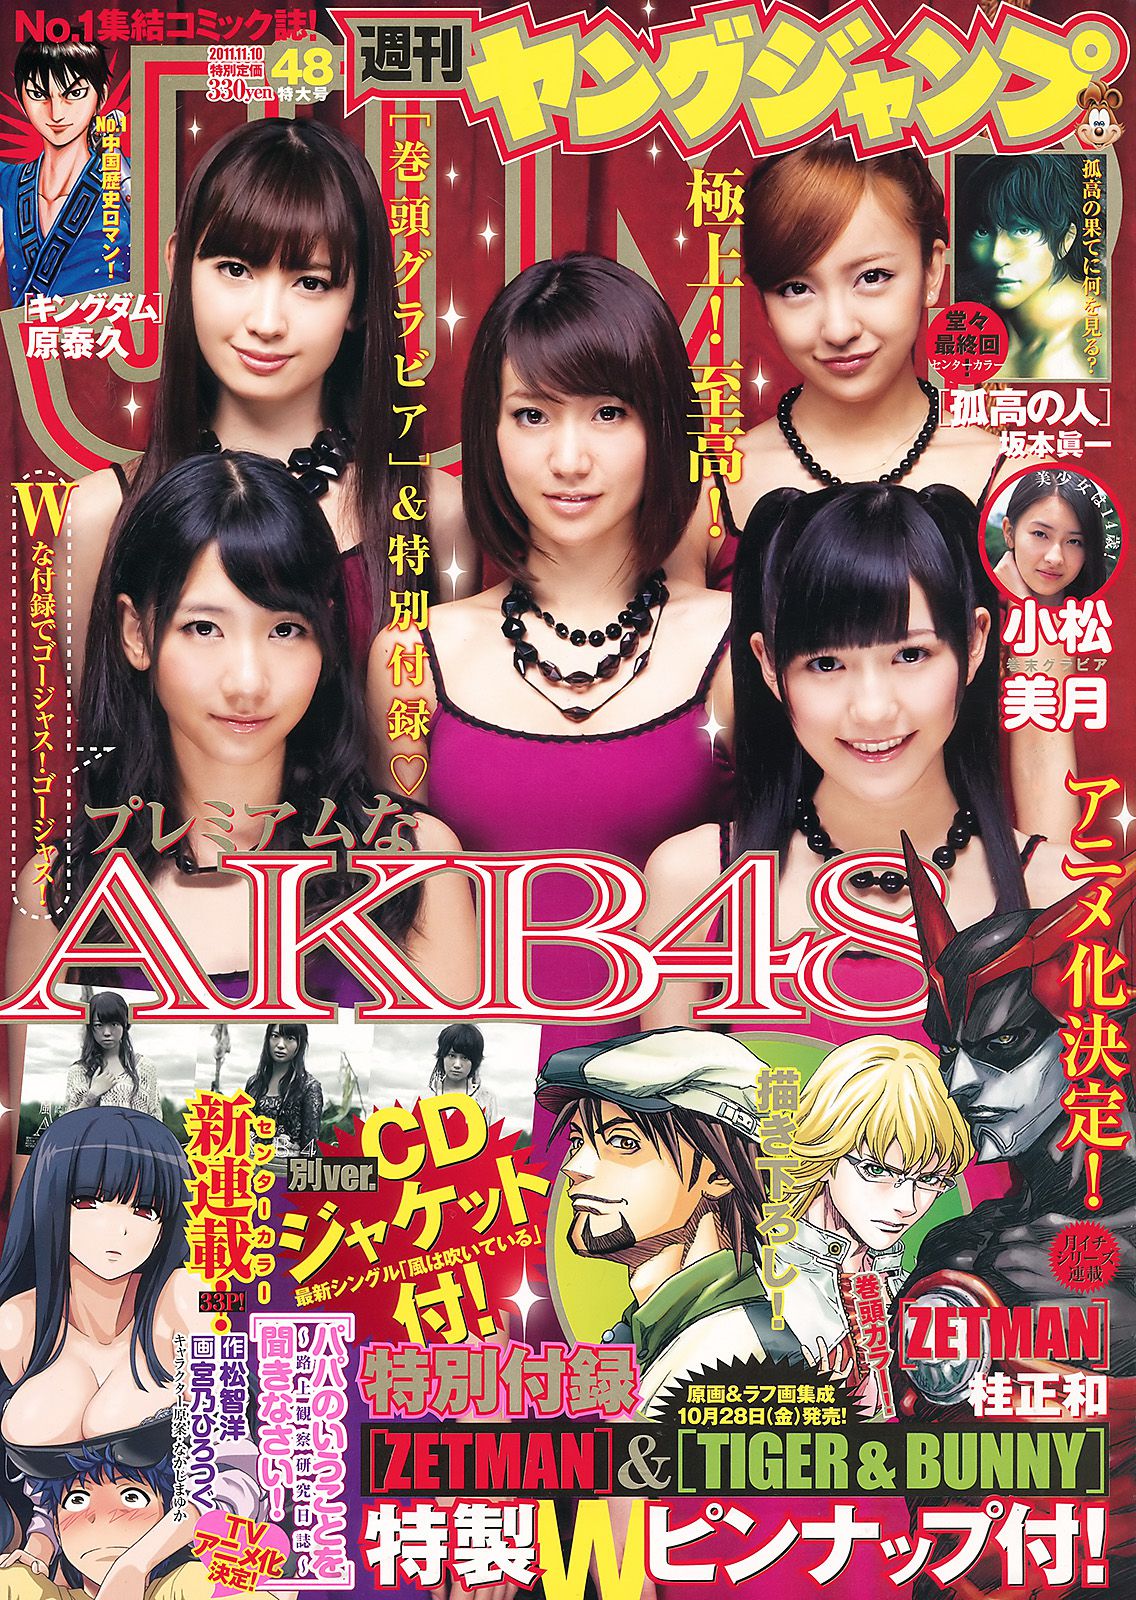 AKB48 小松美月 [週刊ヤングジャンプ] 2011年No.48 写真杂志1